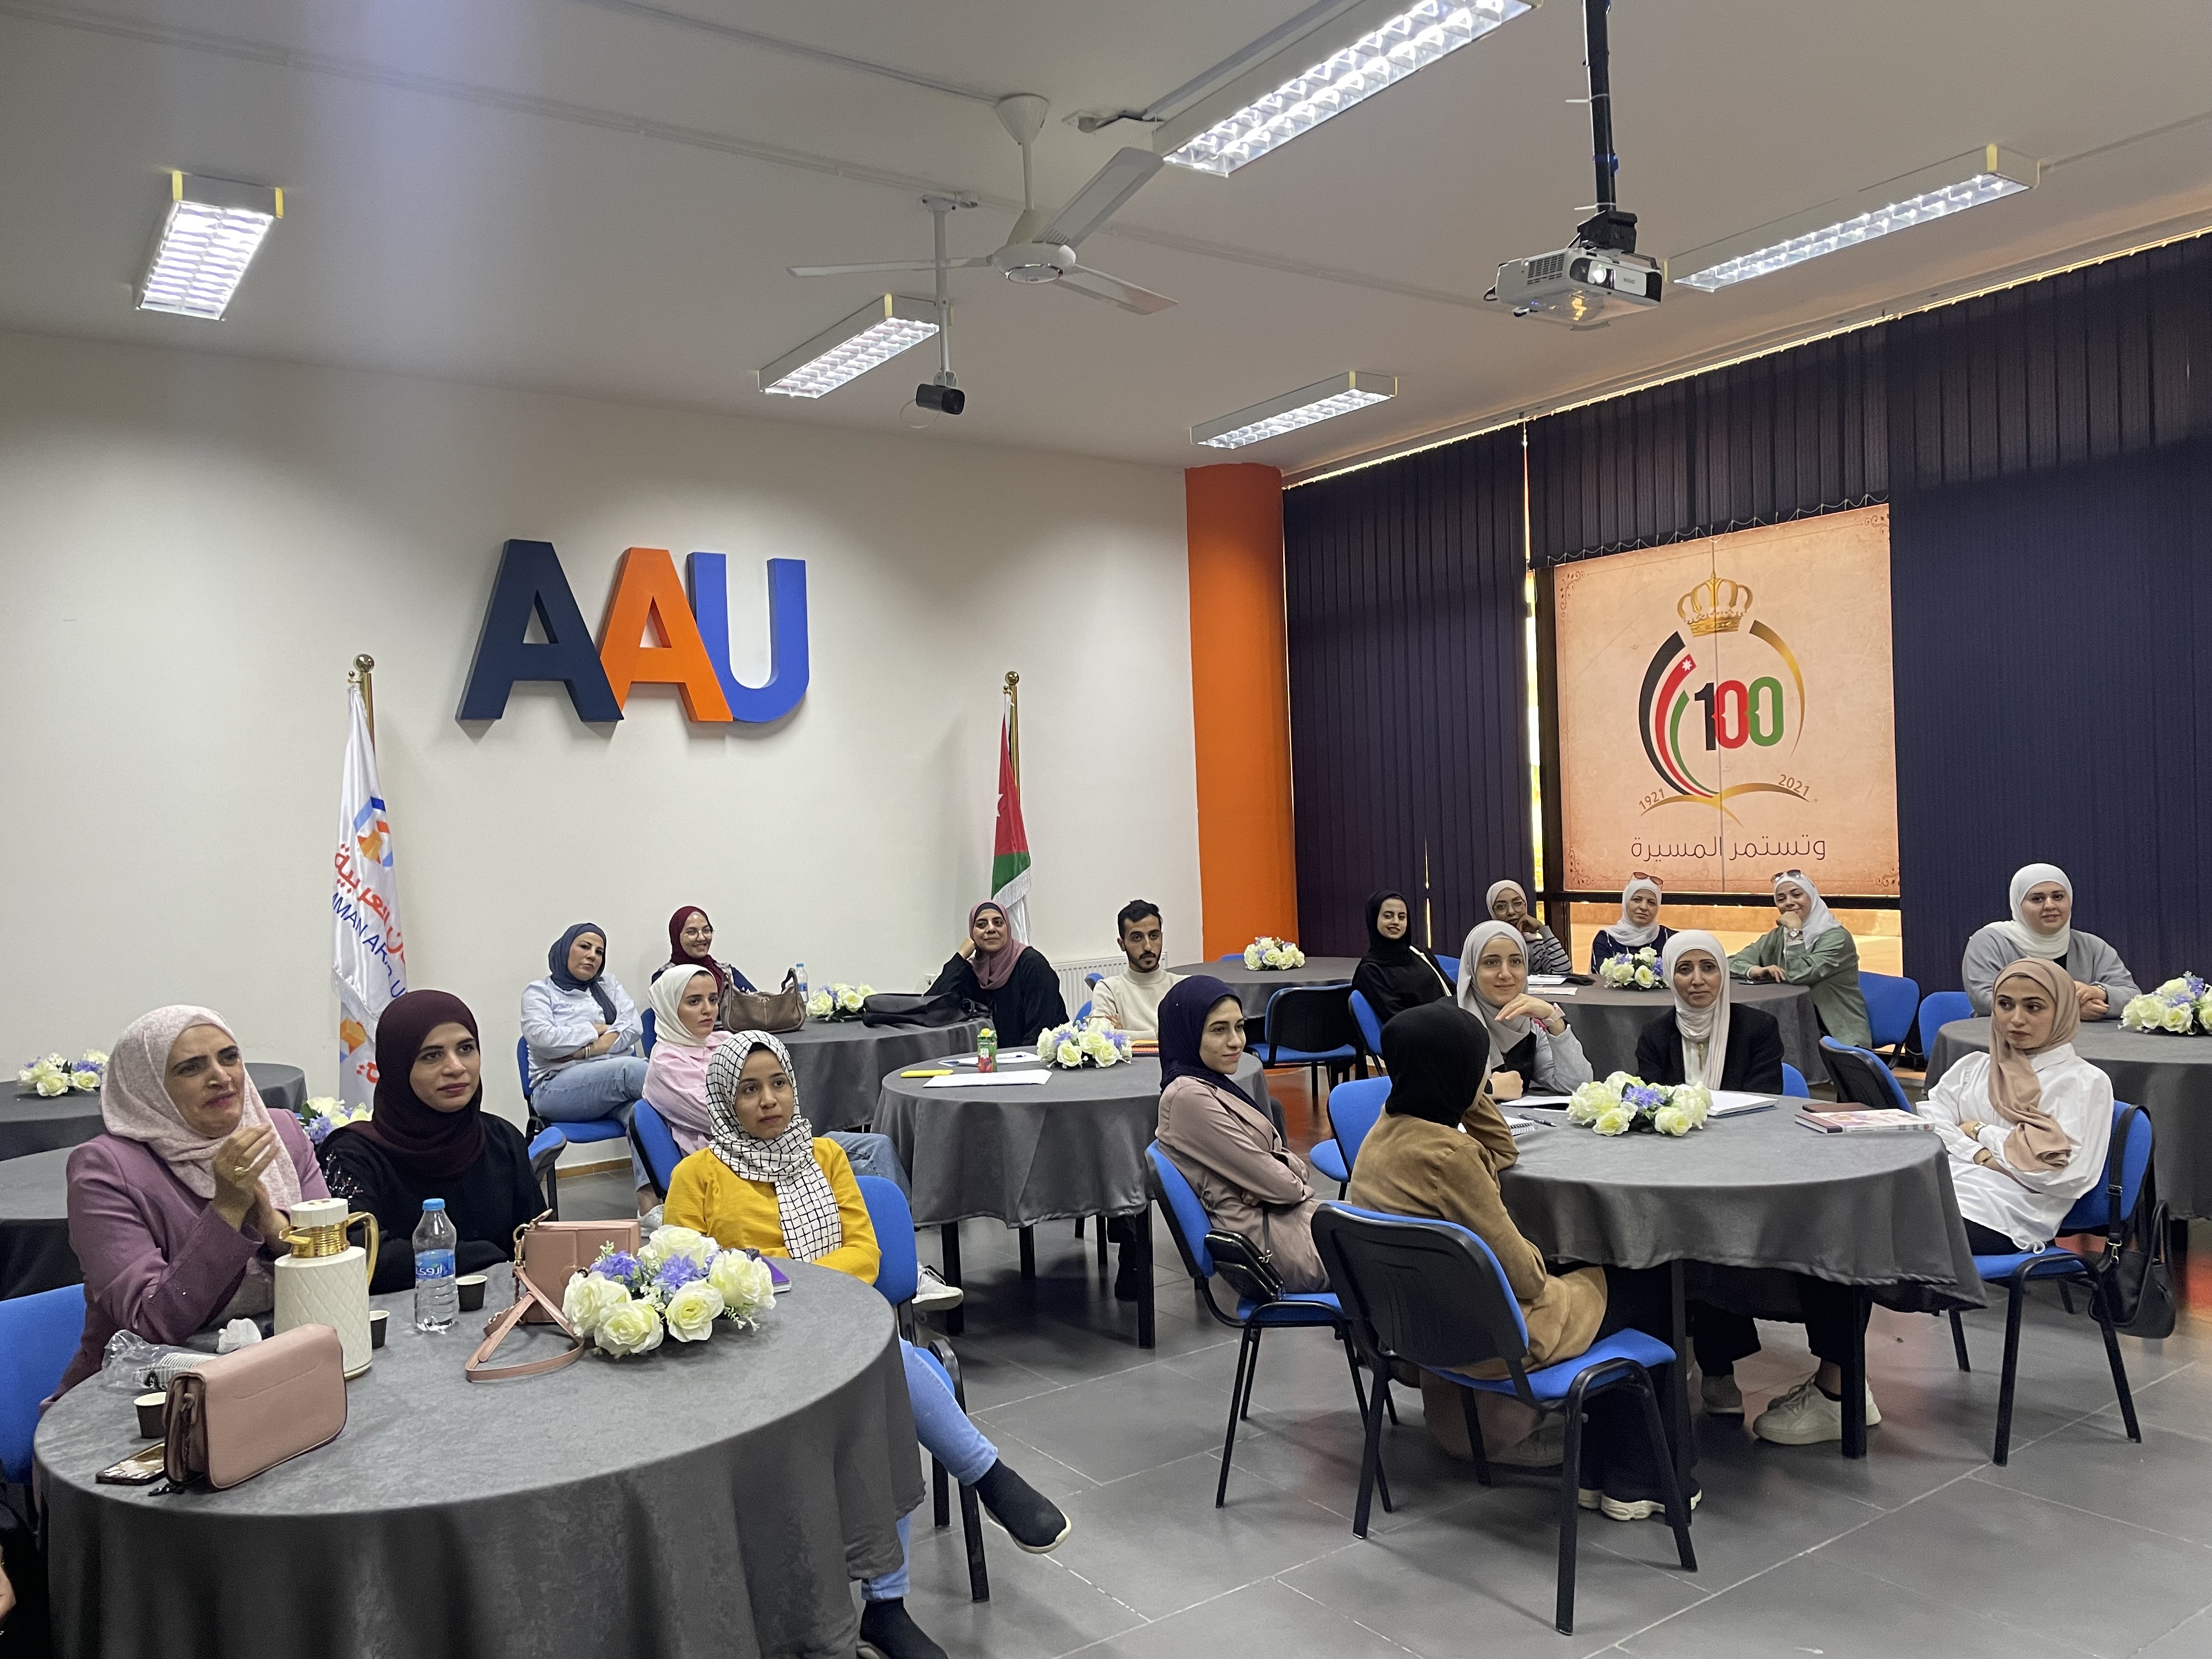 ورشة "التعلم مدى الحياة" لطلبة جامعة عمان العربية3